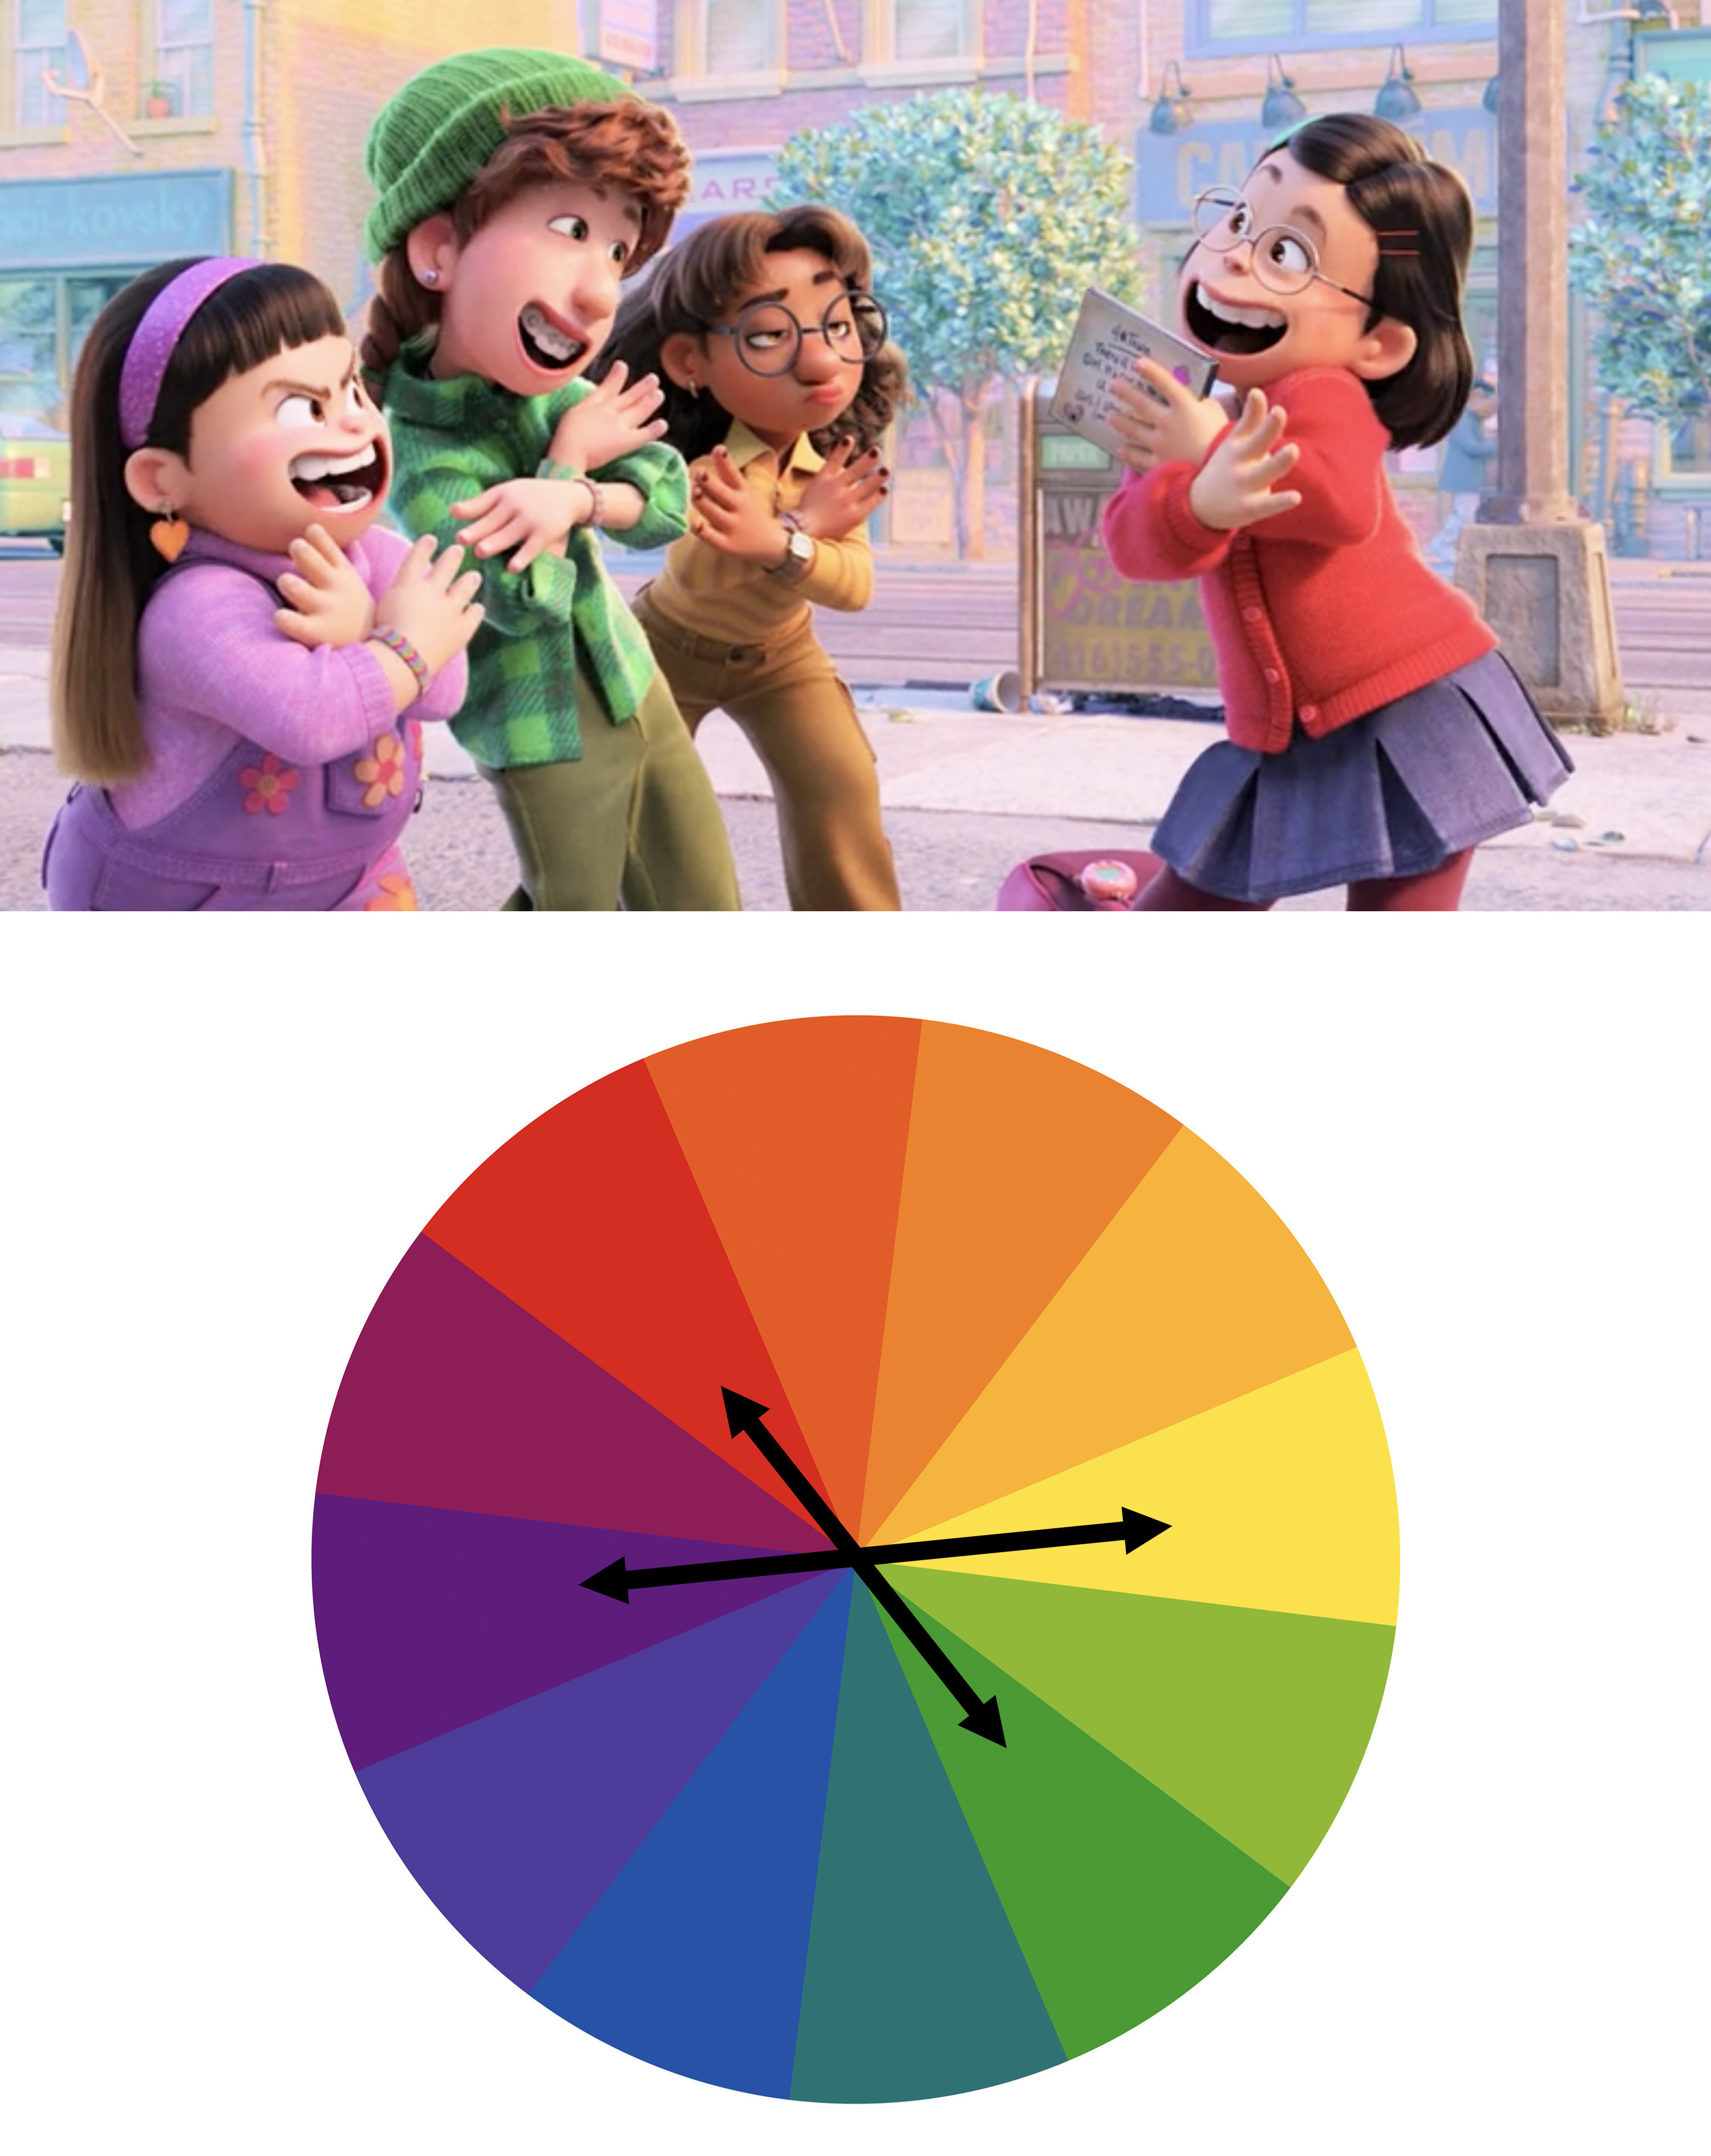 Abby, Miriam, and Priya&#x27;s outfits vs a color wheel